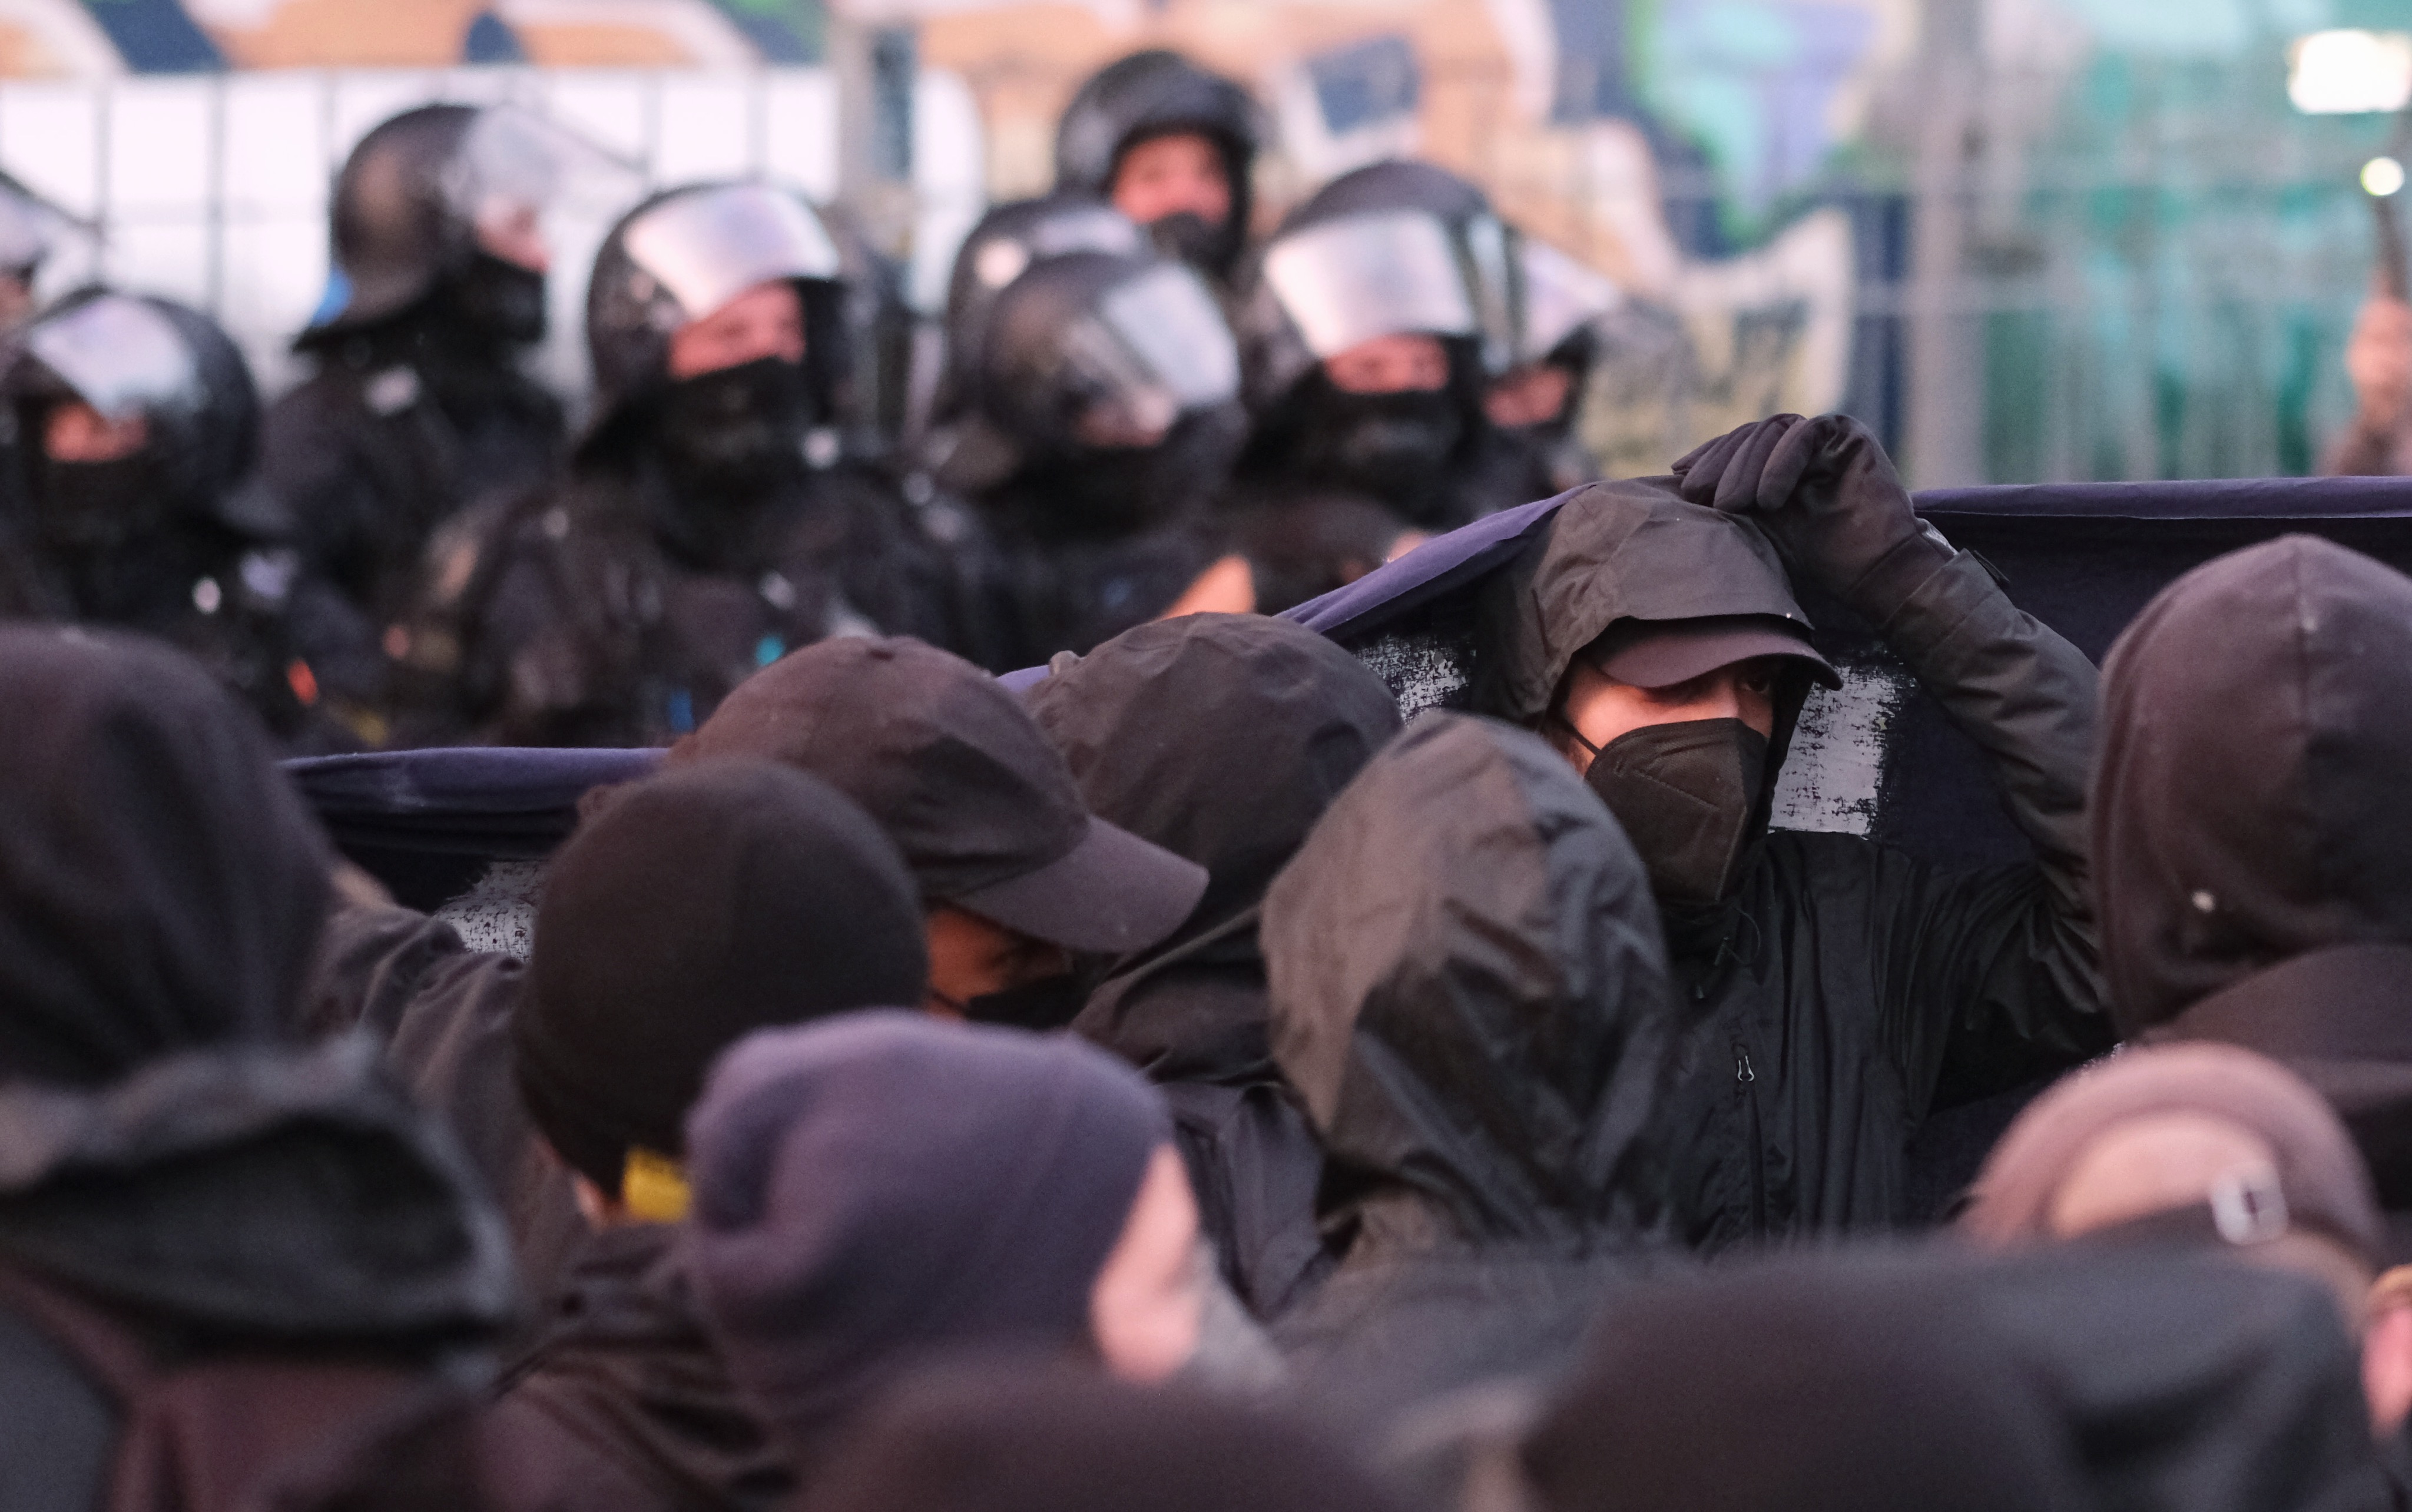   Avantgarde von gestern  | Autoritär-kommunistische Gruppen sehen sich in Leipzigs linker Szene im Aufwind – währenddessen werden undogmatische Gegenstimmen lauter   